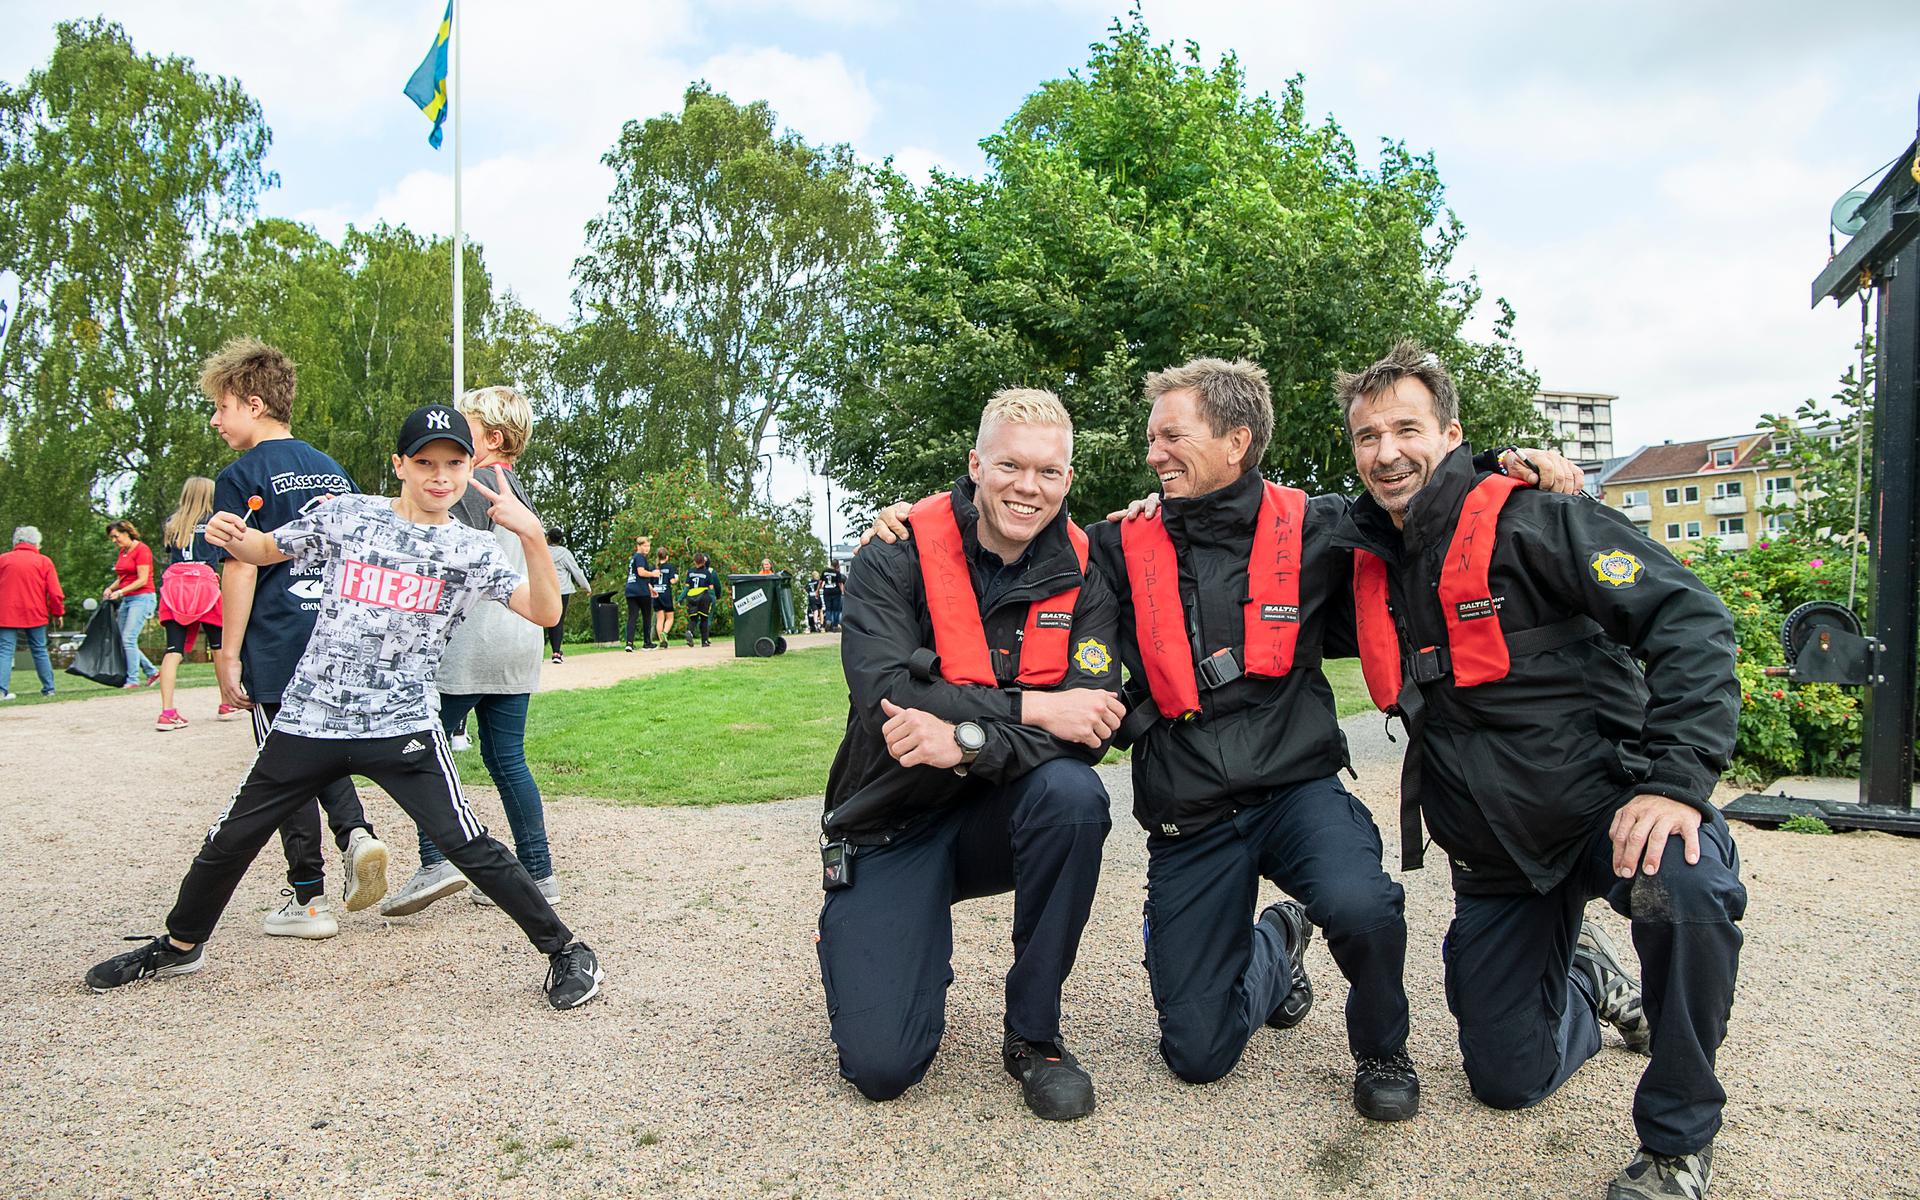 2018 Trollhättan. När över 4000 elever springer i kanalmiljön, så finns några av Närf:s brandmän på plats för att snabbt kunna gripa in om något skulle hända. Och precis som många barn gillar Calle, Per och Roland att posera. 